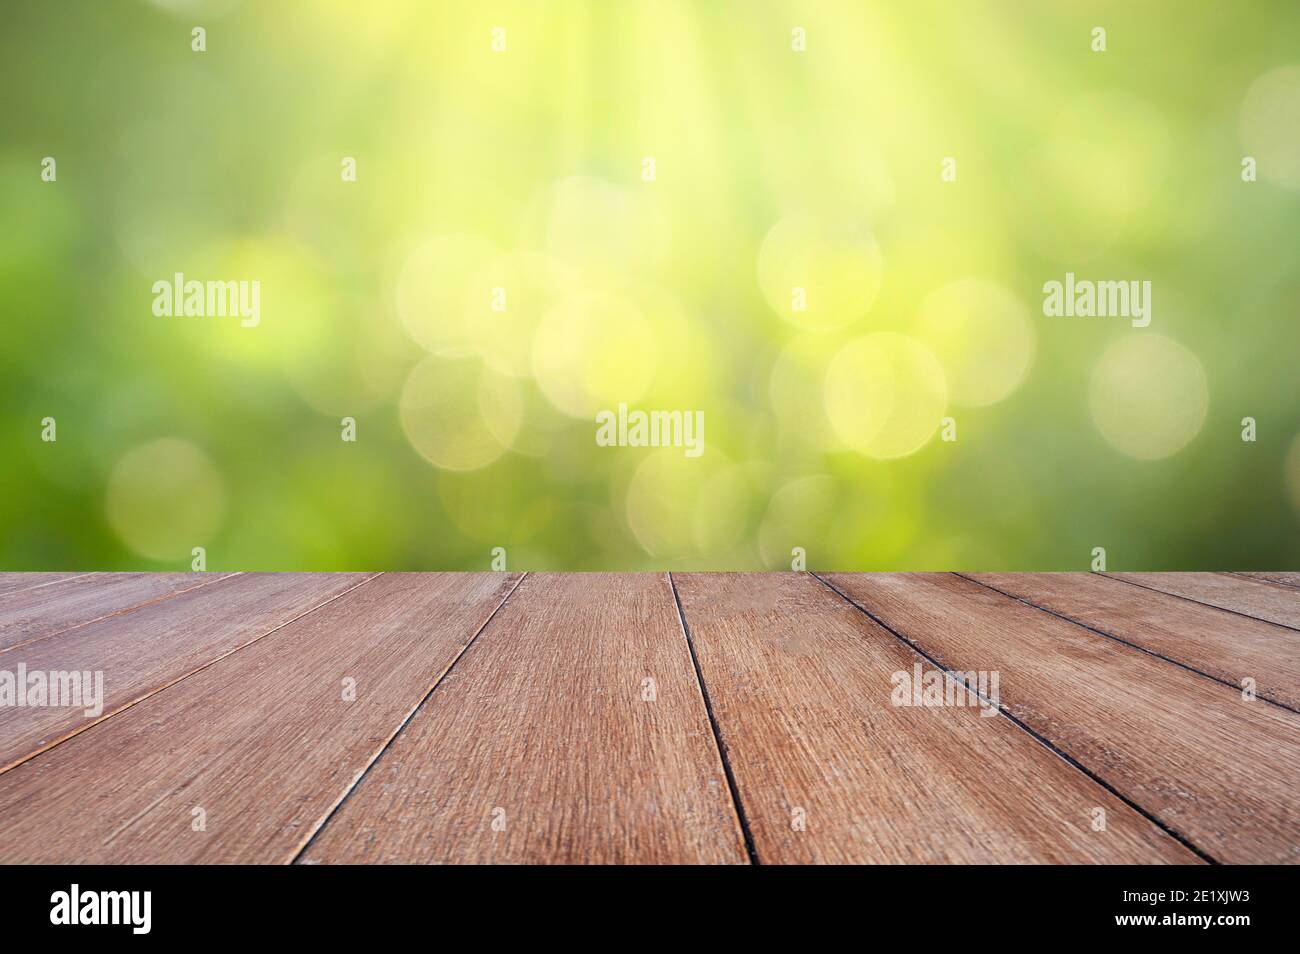 Natürlichen, grünen Hintergrund mit selektiven Fokus. Der grüne Hintergrund hat ein Bokeh Blätter und Gras auf weißem Holzfußboden. Stockfoto